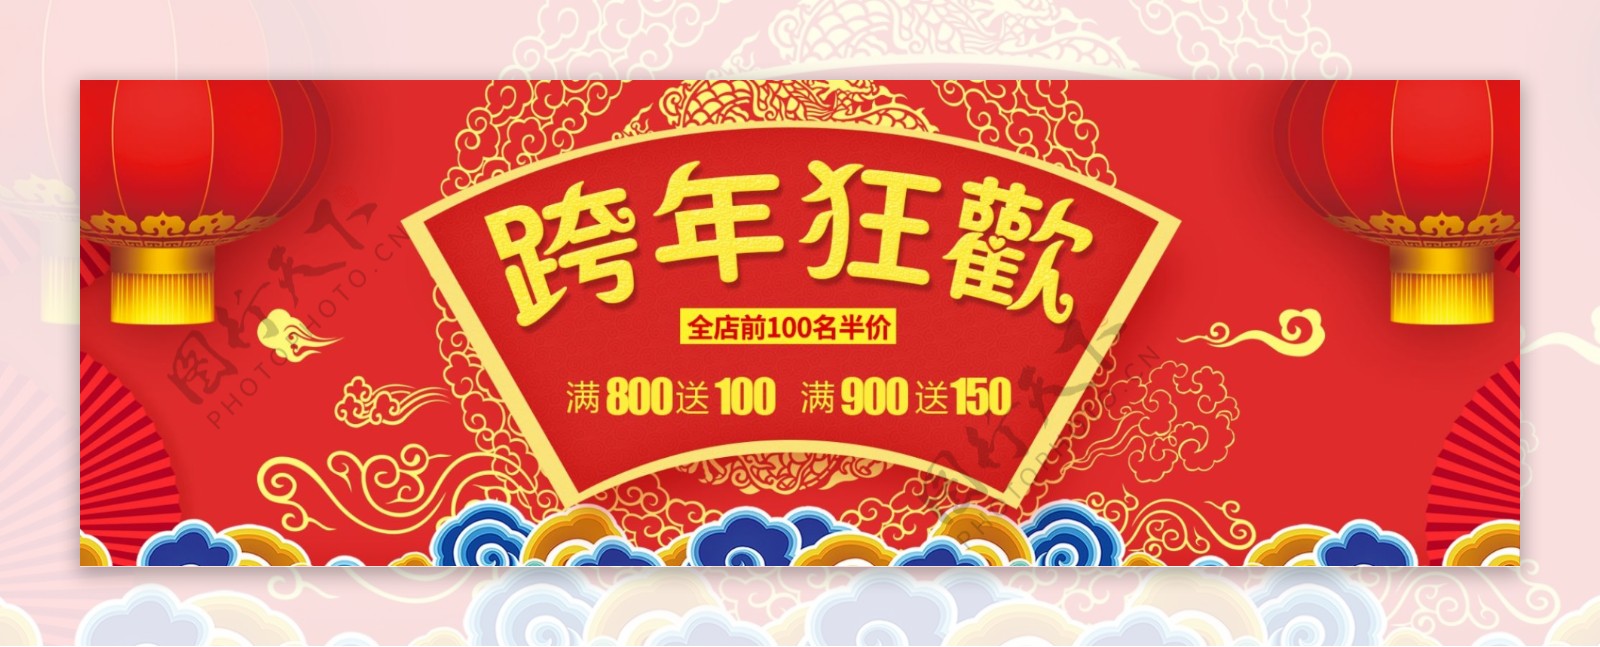 红色淘宝电商跨年狂欢活动海报banner